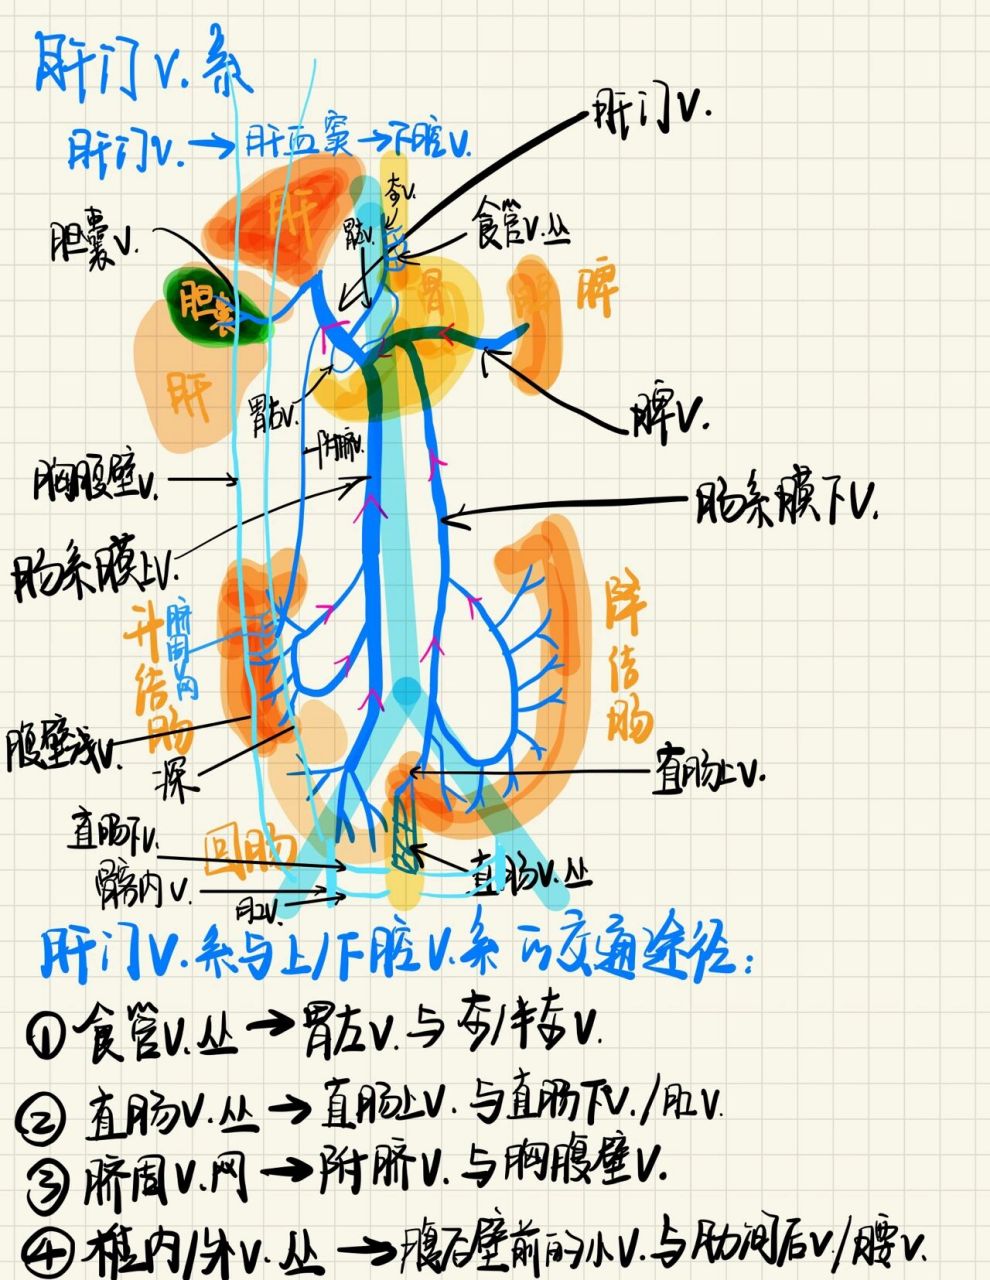 肝静脉和门静脉的图解图片